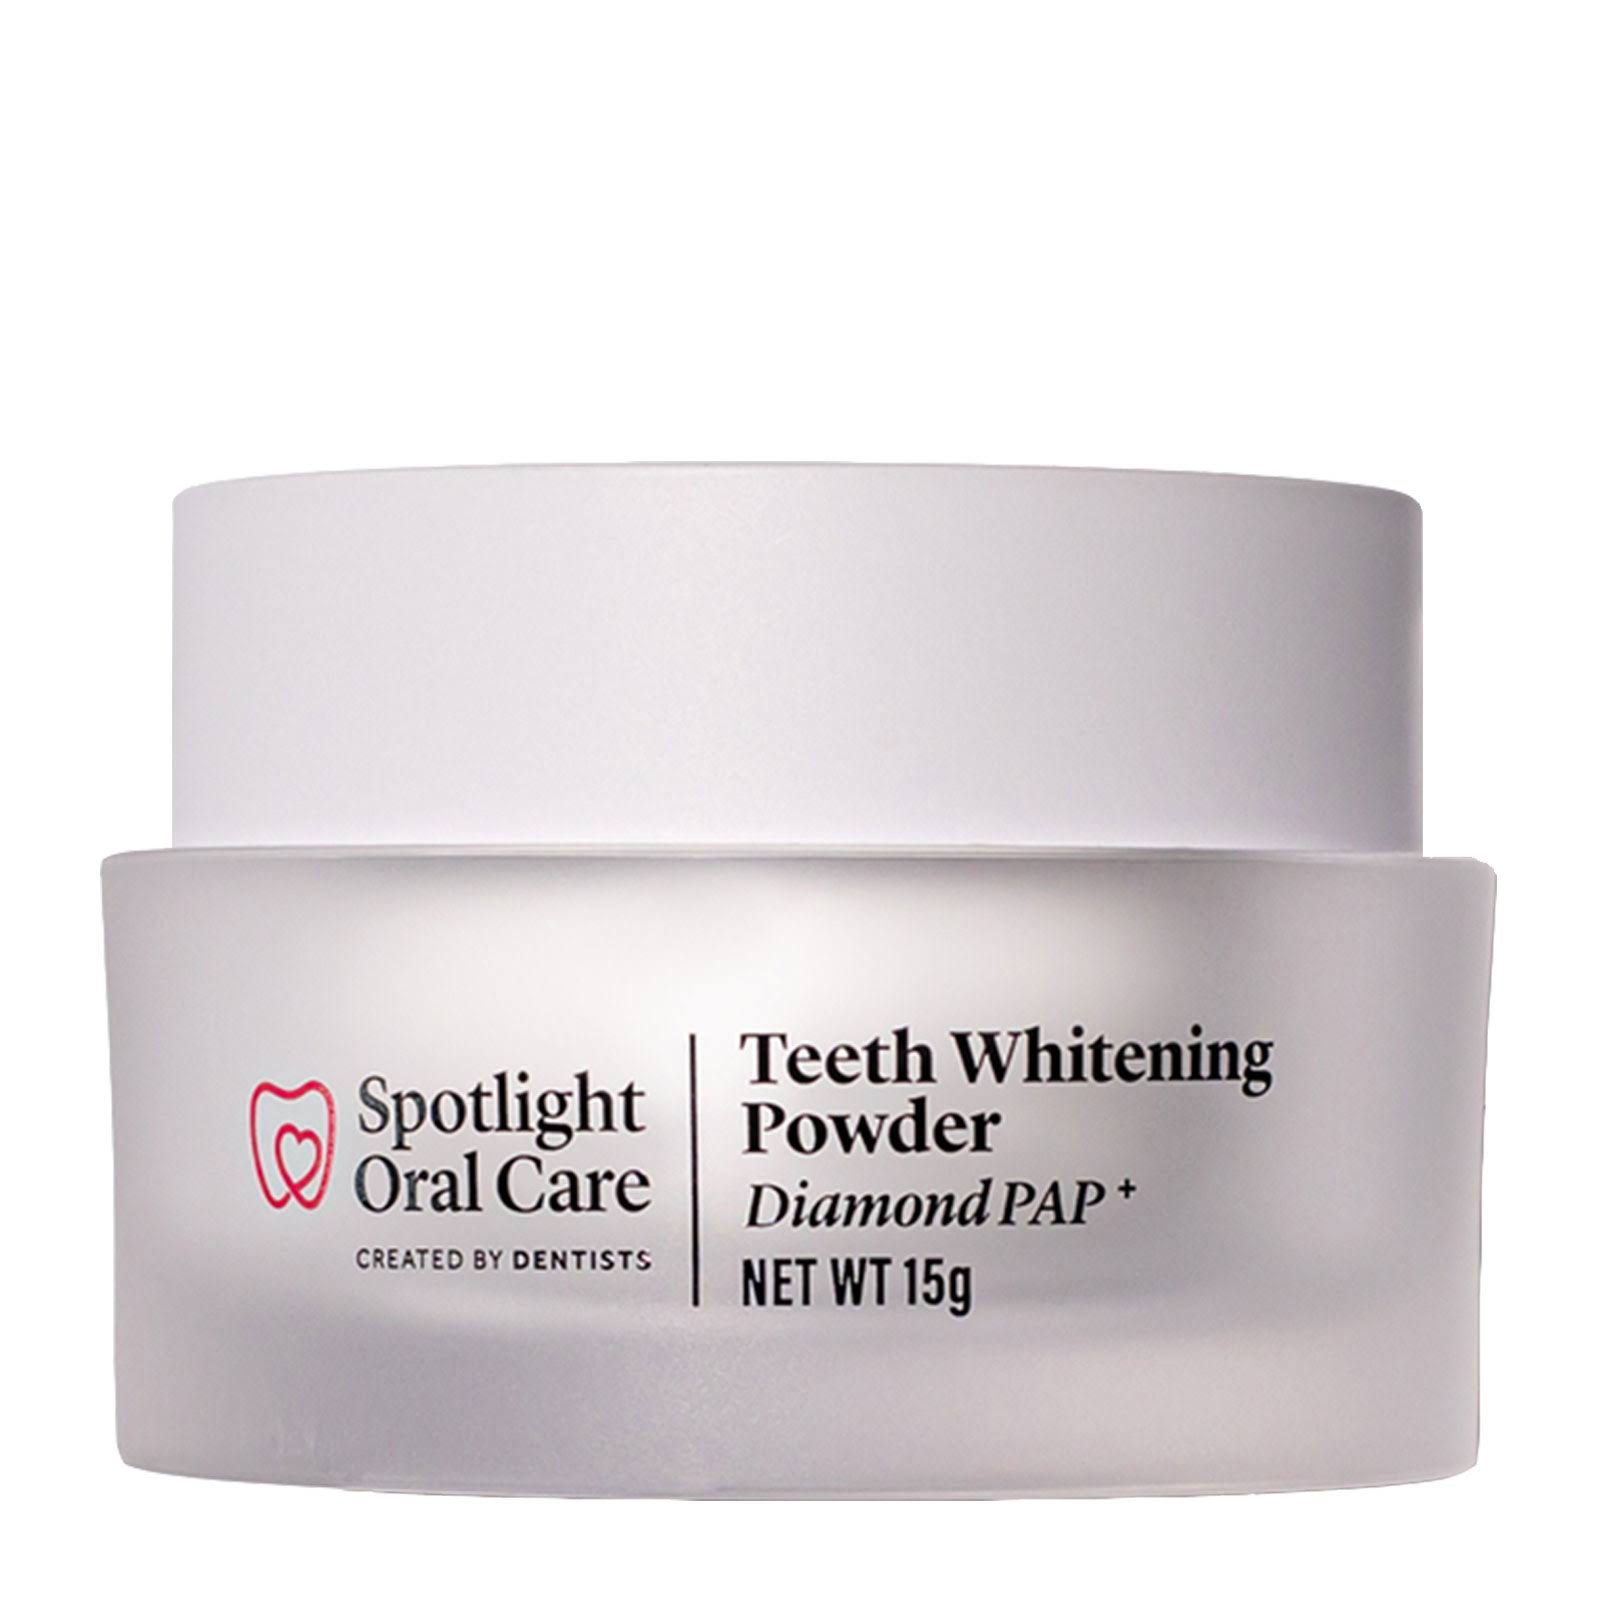 Spotlight Oral Care Diamond Pap+ Teeth Whitening Powder